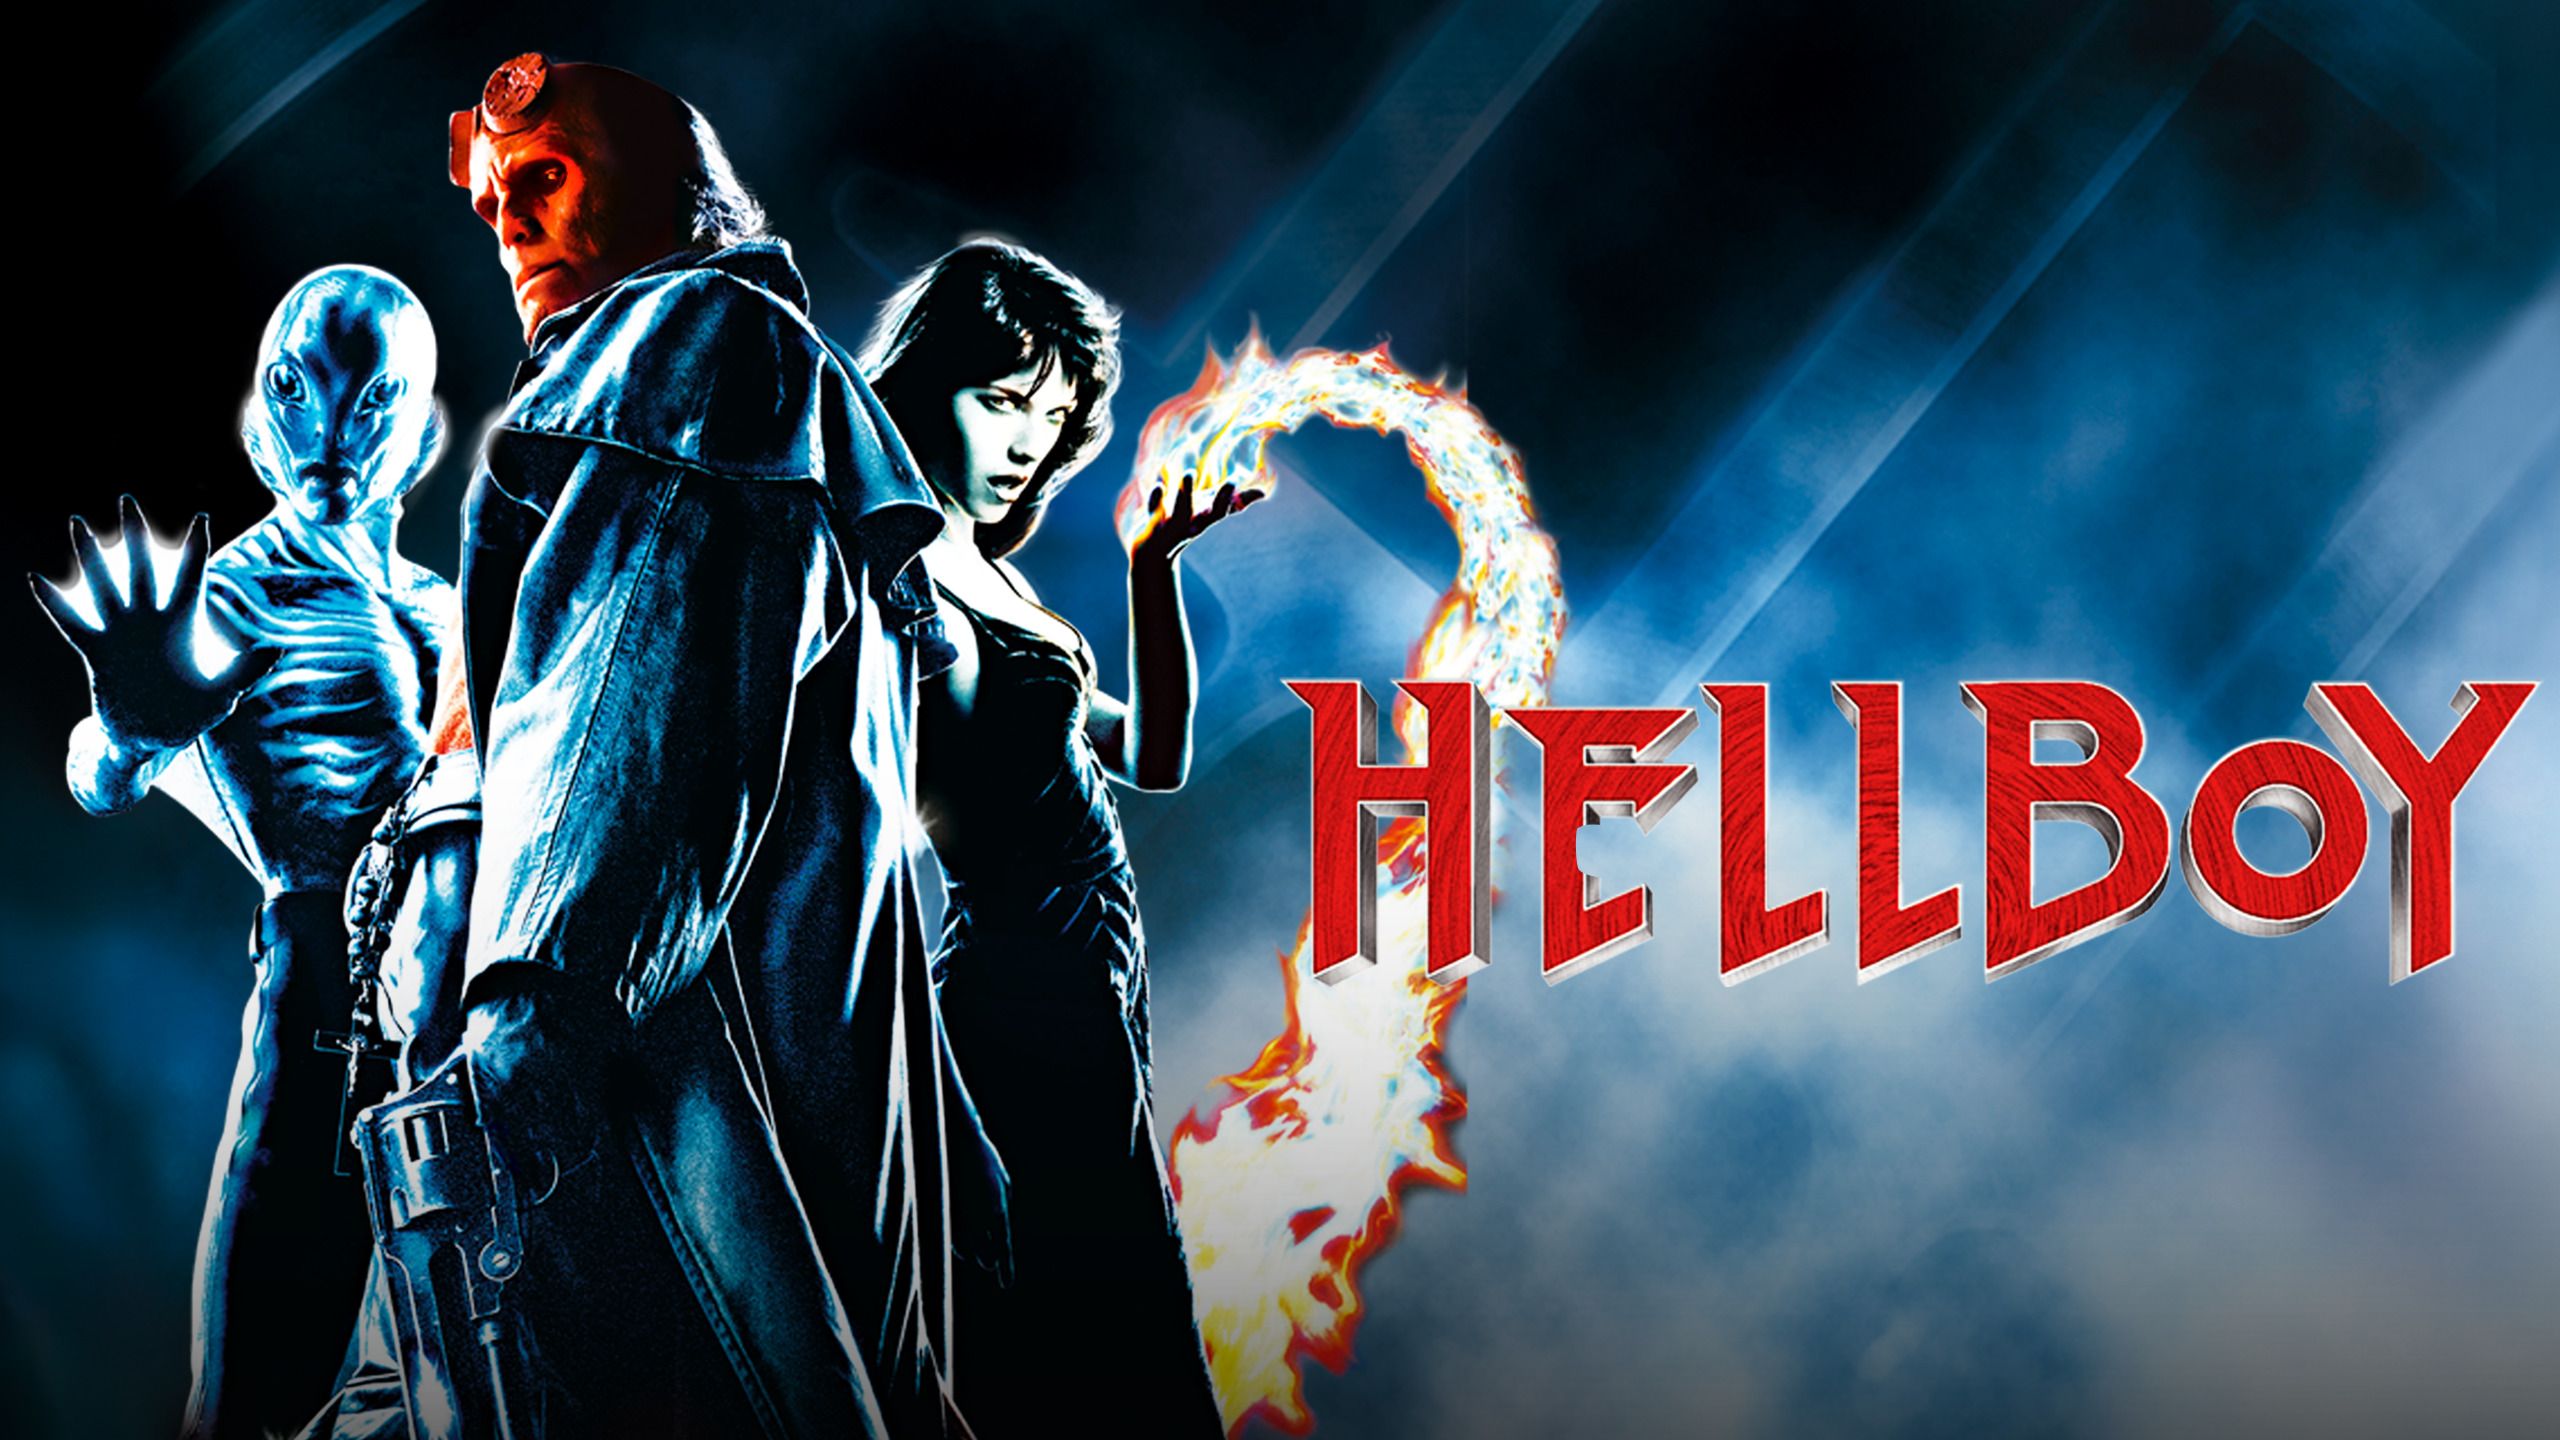 watch hellboy 2004 full movie